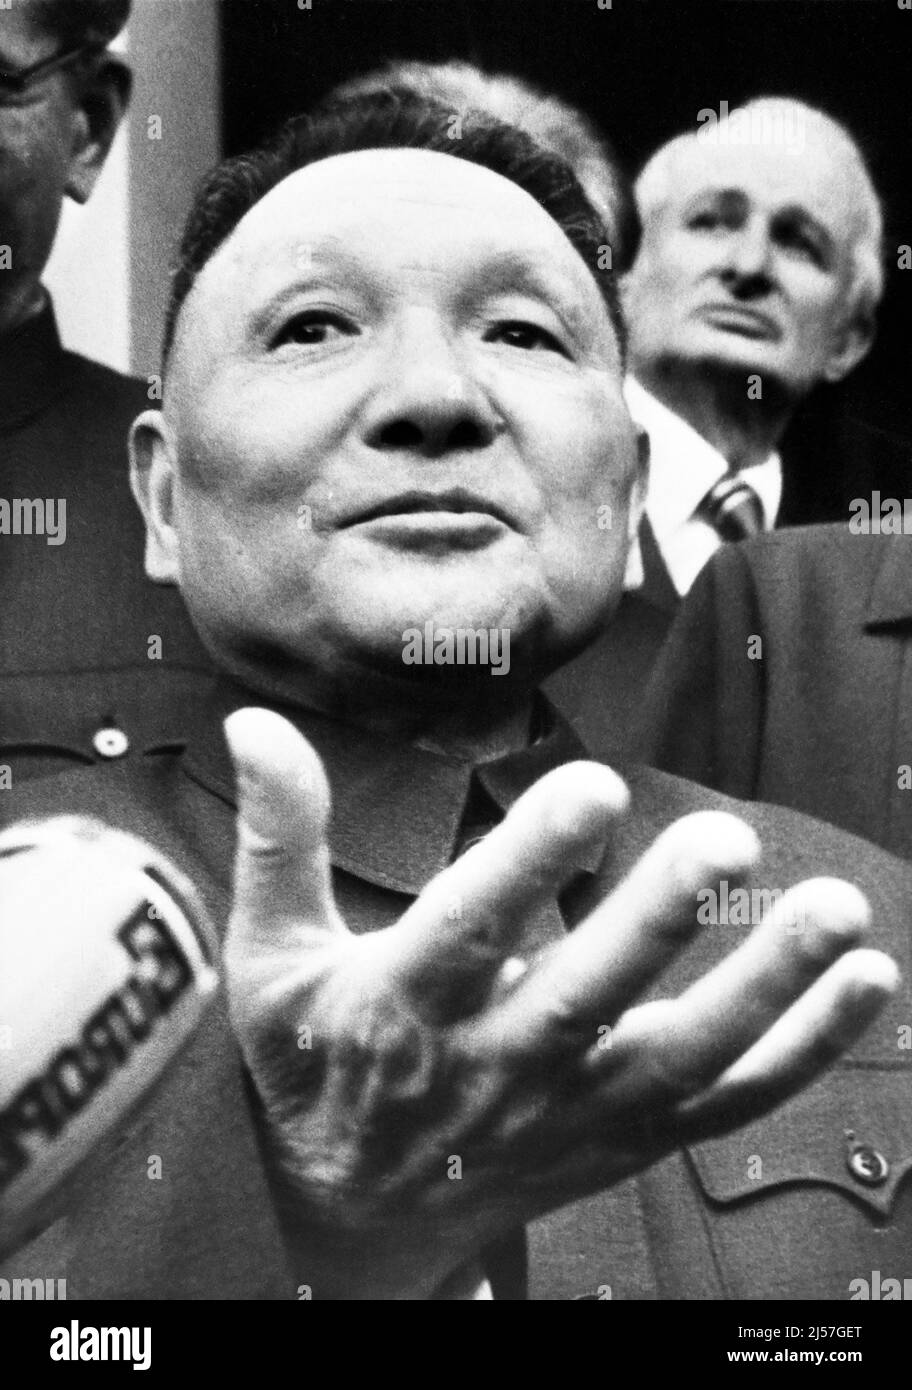 China: Deng Xiaoping (22 de agosto de 1904 – 19 de febrero de 1997) visto aquí el 6th de abril de 1976. Deng Xiaoping era un político, estadista, teórico y diplomático chino. Como líder del Partido Comunista de China, Deng fue un reformista que llevó a China hacia una economía de mercado. Aunque Deng nunca ocupó el cargo de Jefe de Estado, Jefe de Gobierno o Secretario General del Partido Comunista de China (históricamente la posición más alta en la China comunista), sirvió como líder primordial de la República Popular de China de 1978 a 1992. Foto de stock